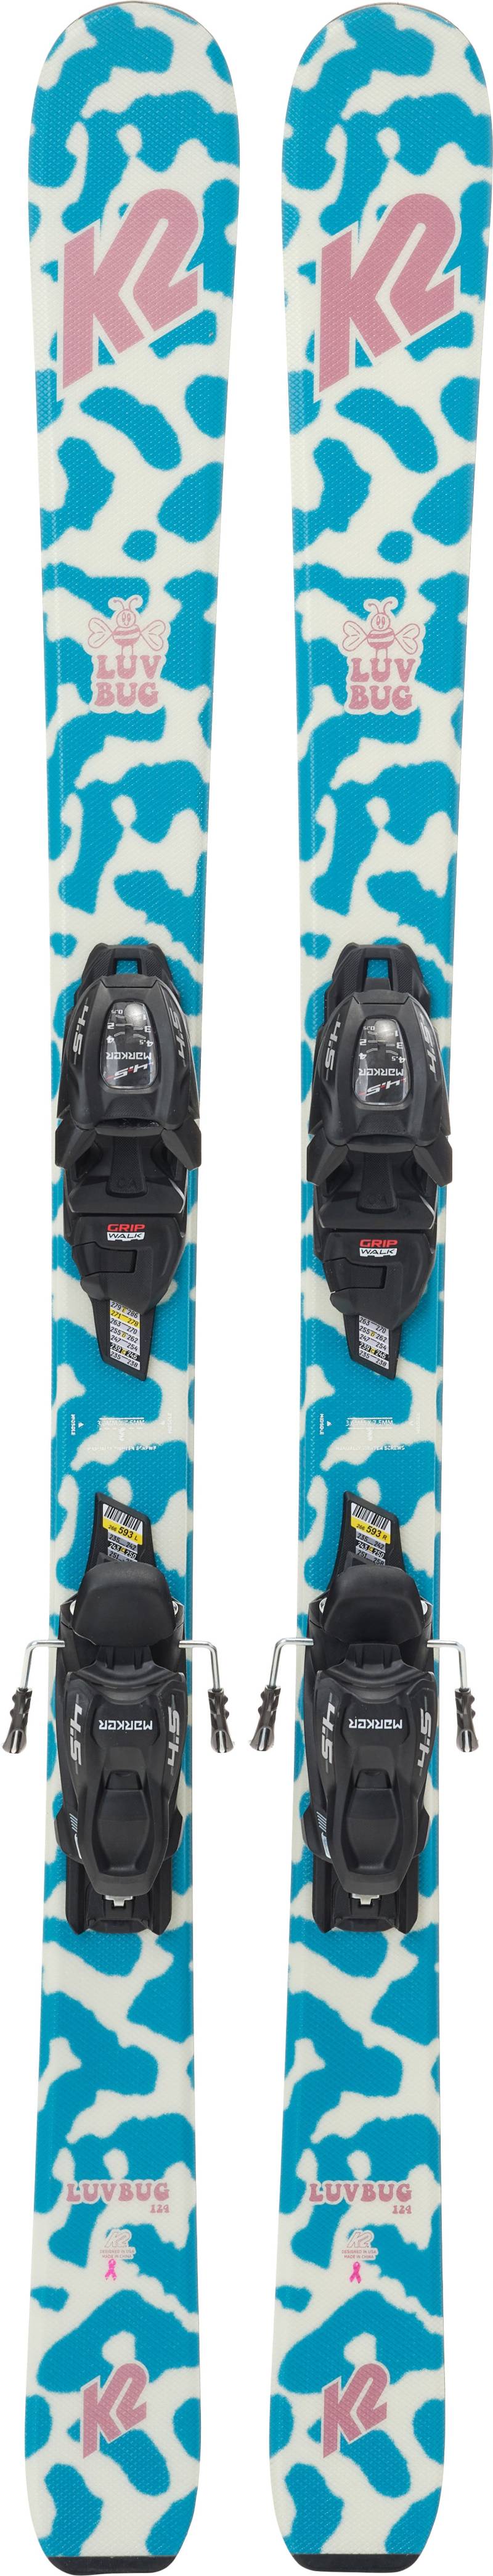 K2 Luv Bug Fdt 4.5 Skier inkl. Bindungen, 76 cm von K2